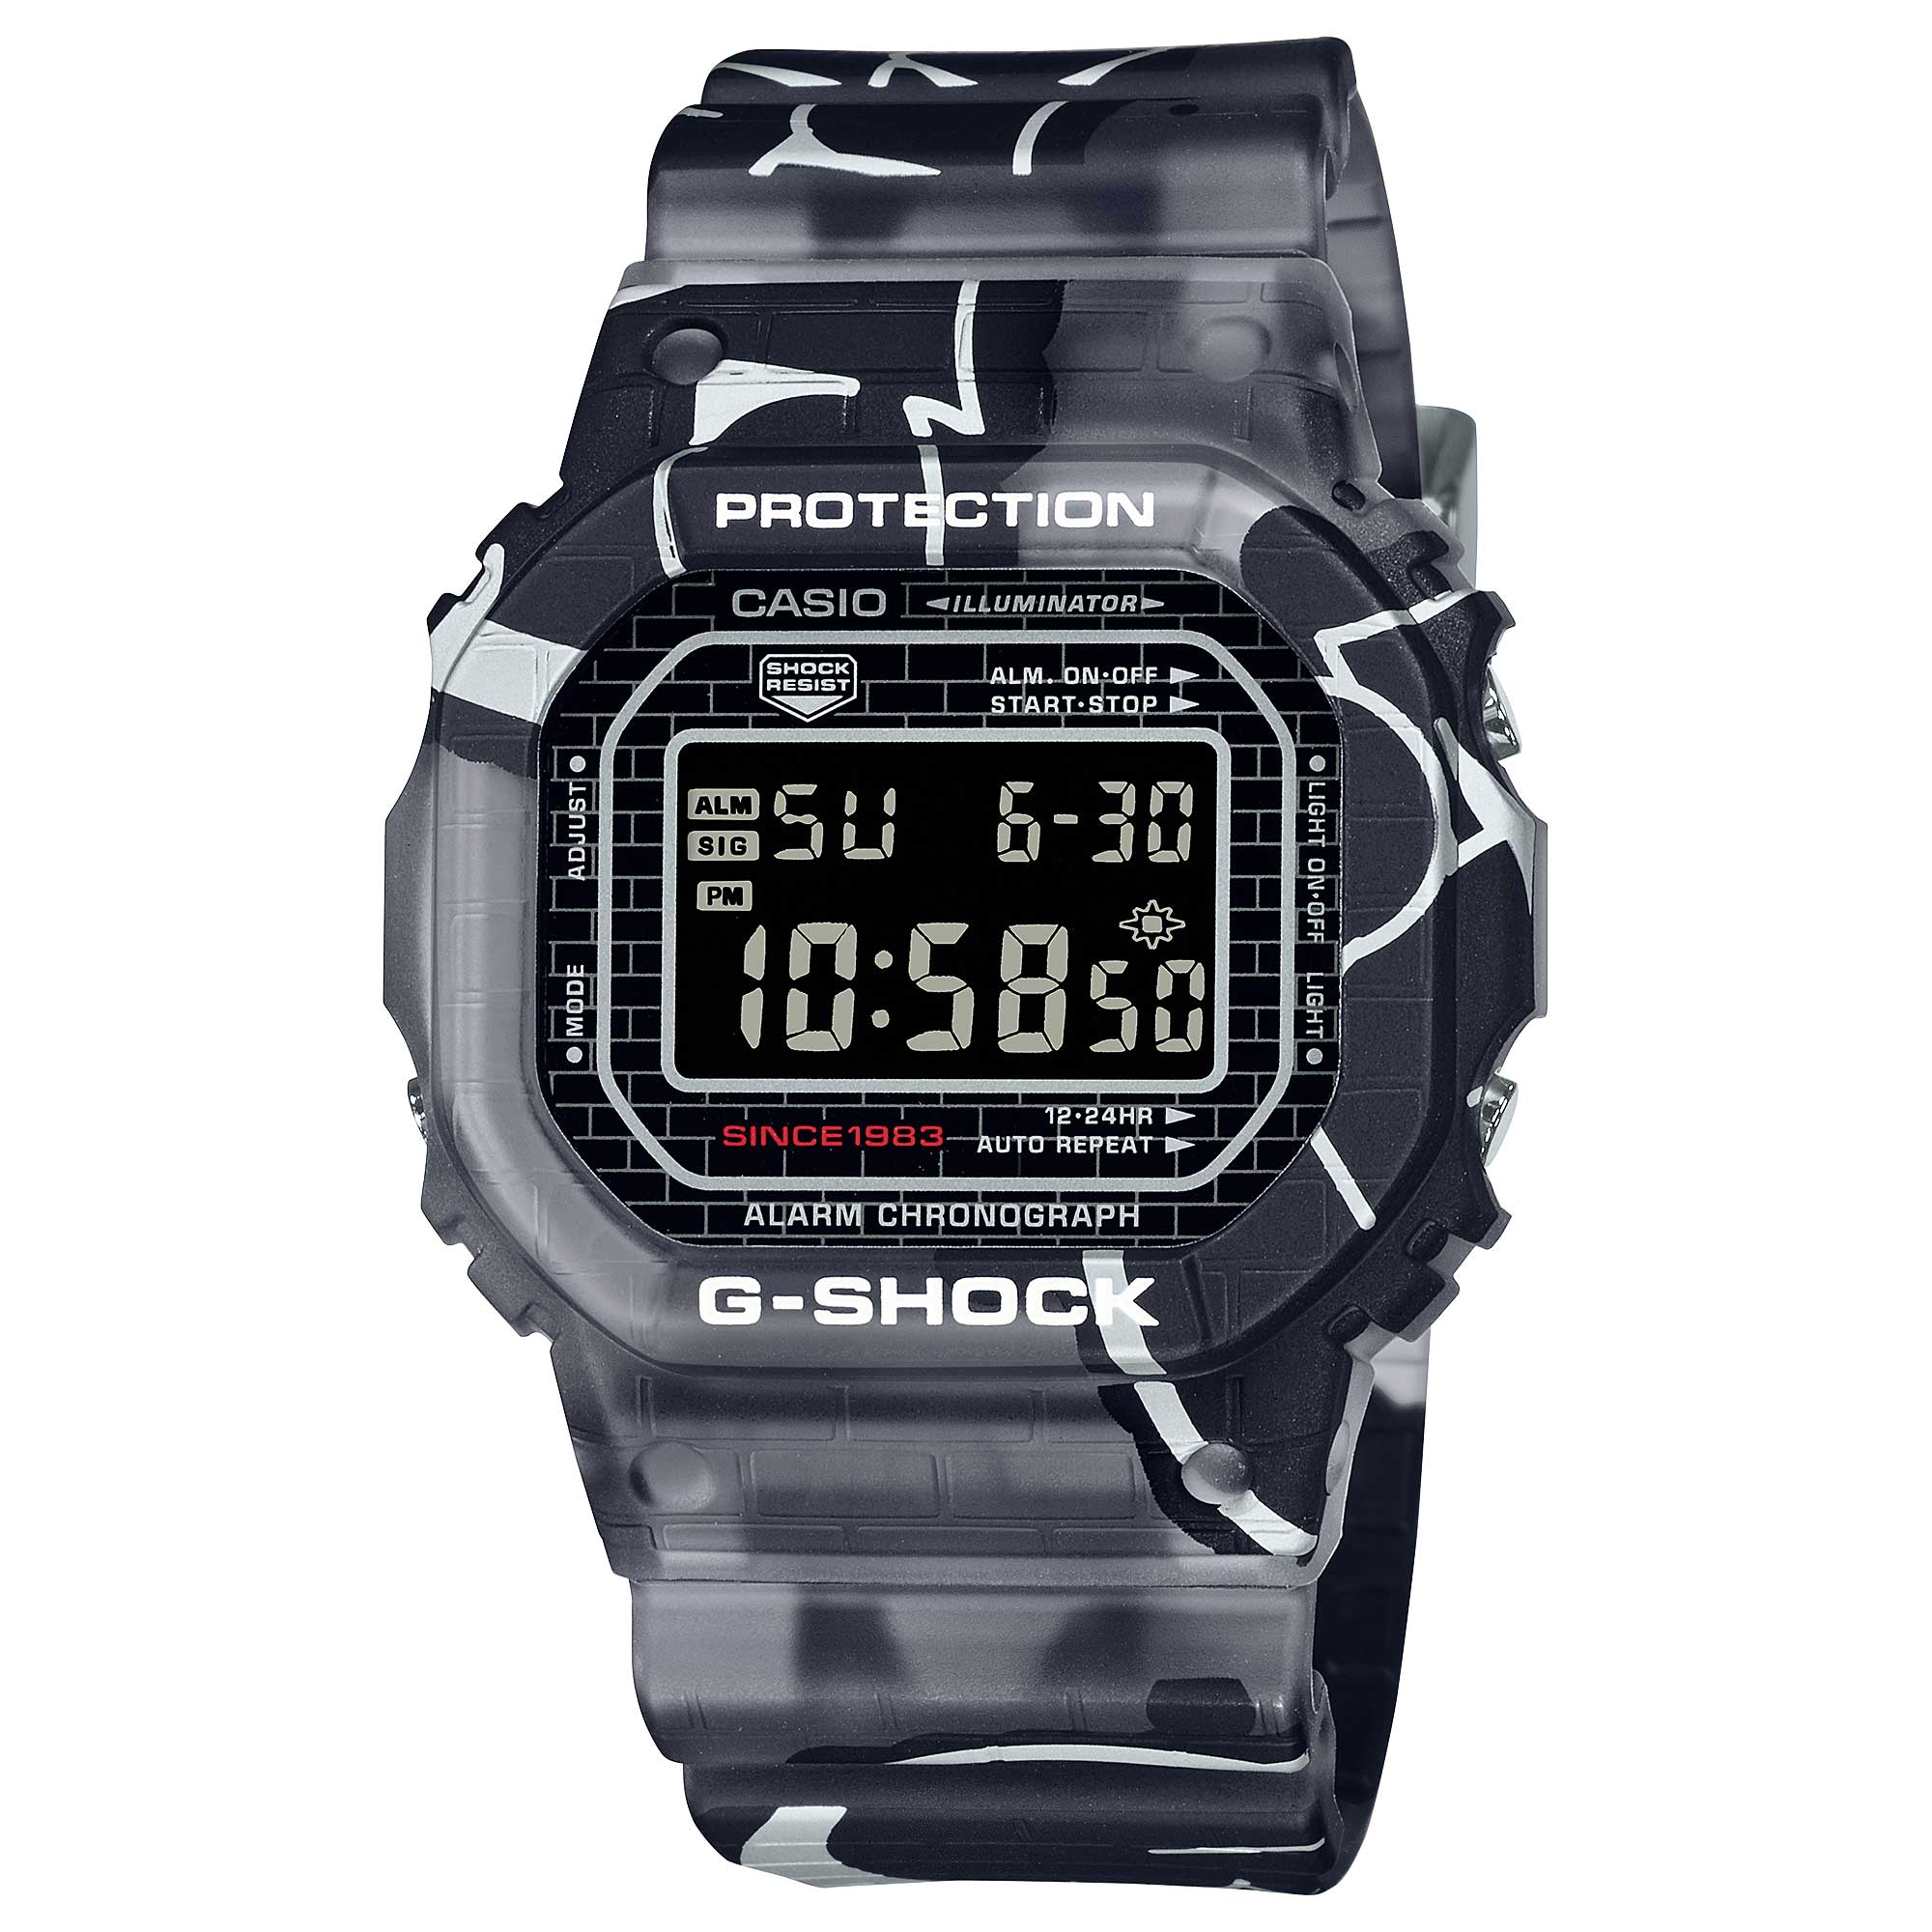 Casio G-Shock DW-5000 Lineup Street Spirit Series Original Graffiti Art Translucent Grey Resin Band Watch DW5000SS-1D DW-5000SS-1D DW-5000SS-1 Watchspree